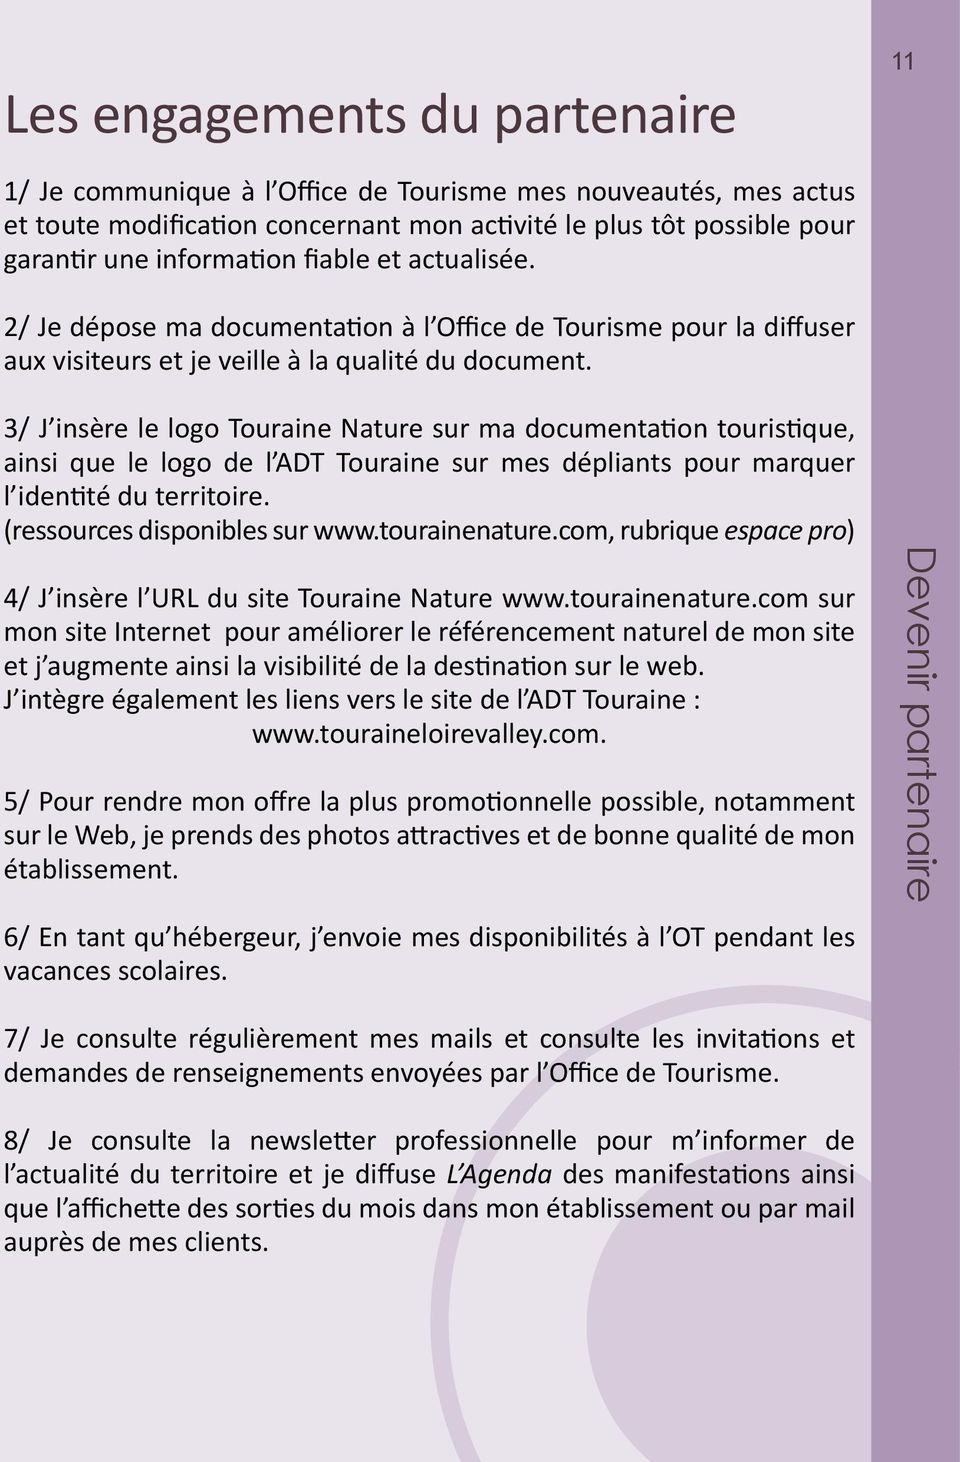 3/ J insère le logo Touraine Nature sur ma documentation touristique, ainsi que le logo de l ADT Touraine sur mes dépliants pour marquer l identité du territoire. (ressources disponibles sur www.